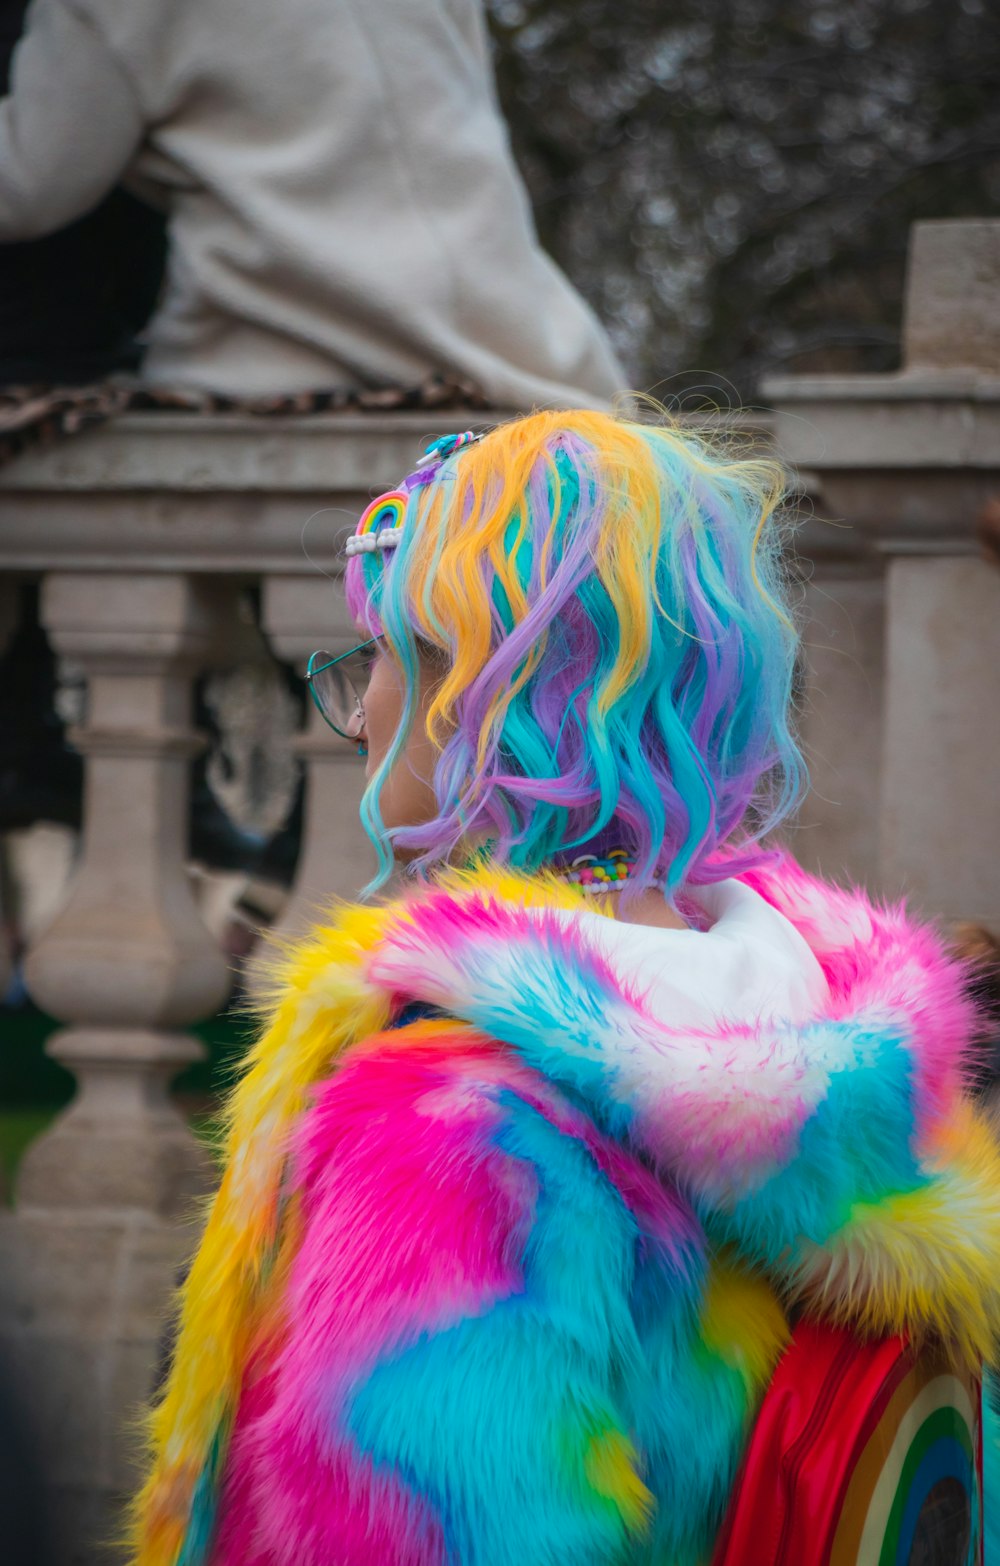 Fotografía selectiva en color de mujer con abrigo y cabello azul, amarillo y rosa